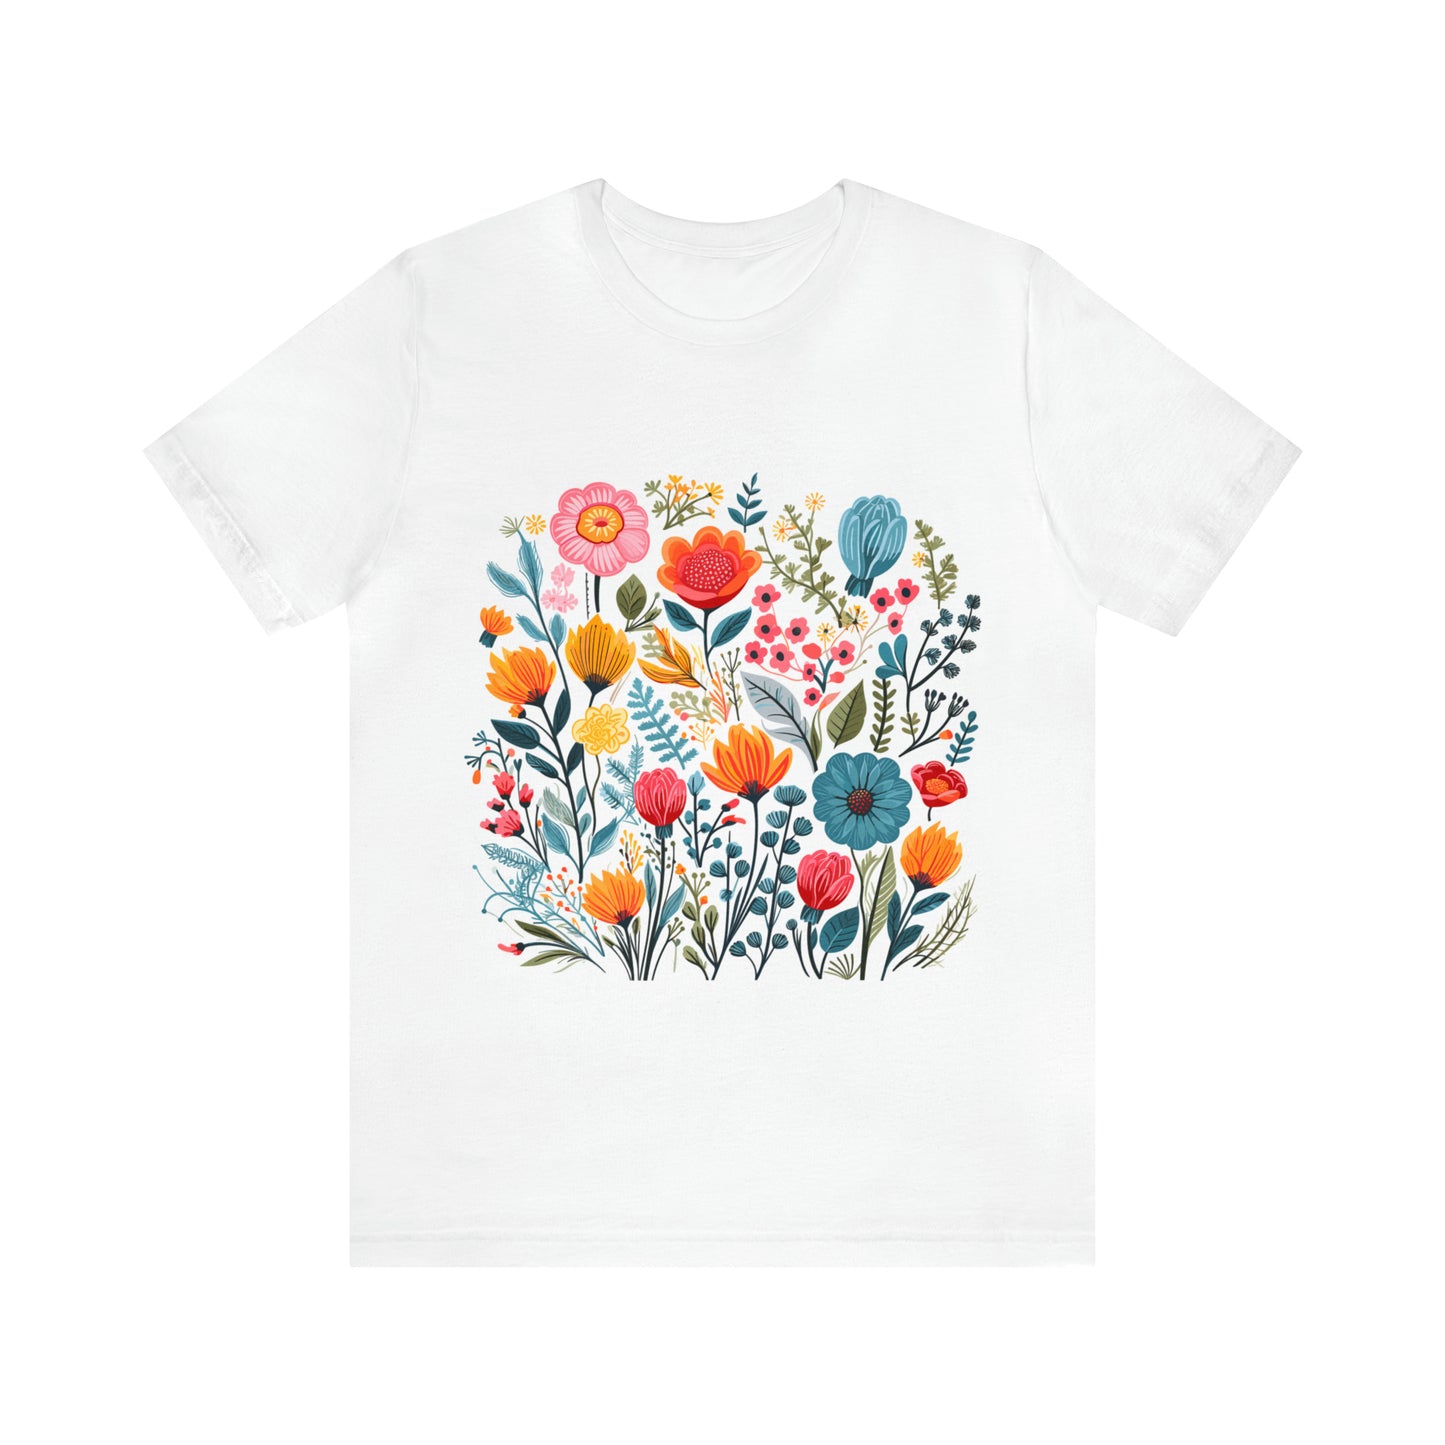 Flower Shirt, Floral Shirt, Garden Shirt, Wildflower Shirt, Botanical Shirt, Cottagecore Shirt, Aesthetic Shirt, Nature Shirt, Gift for her